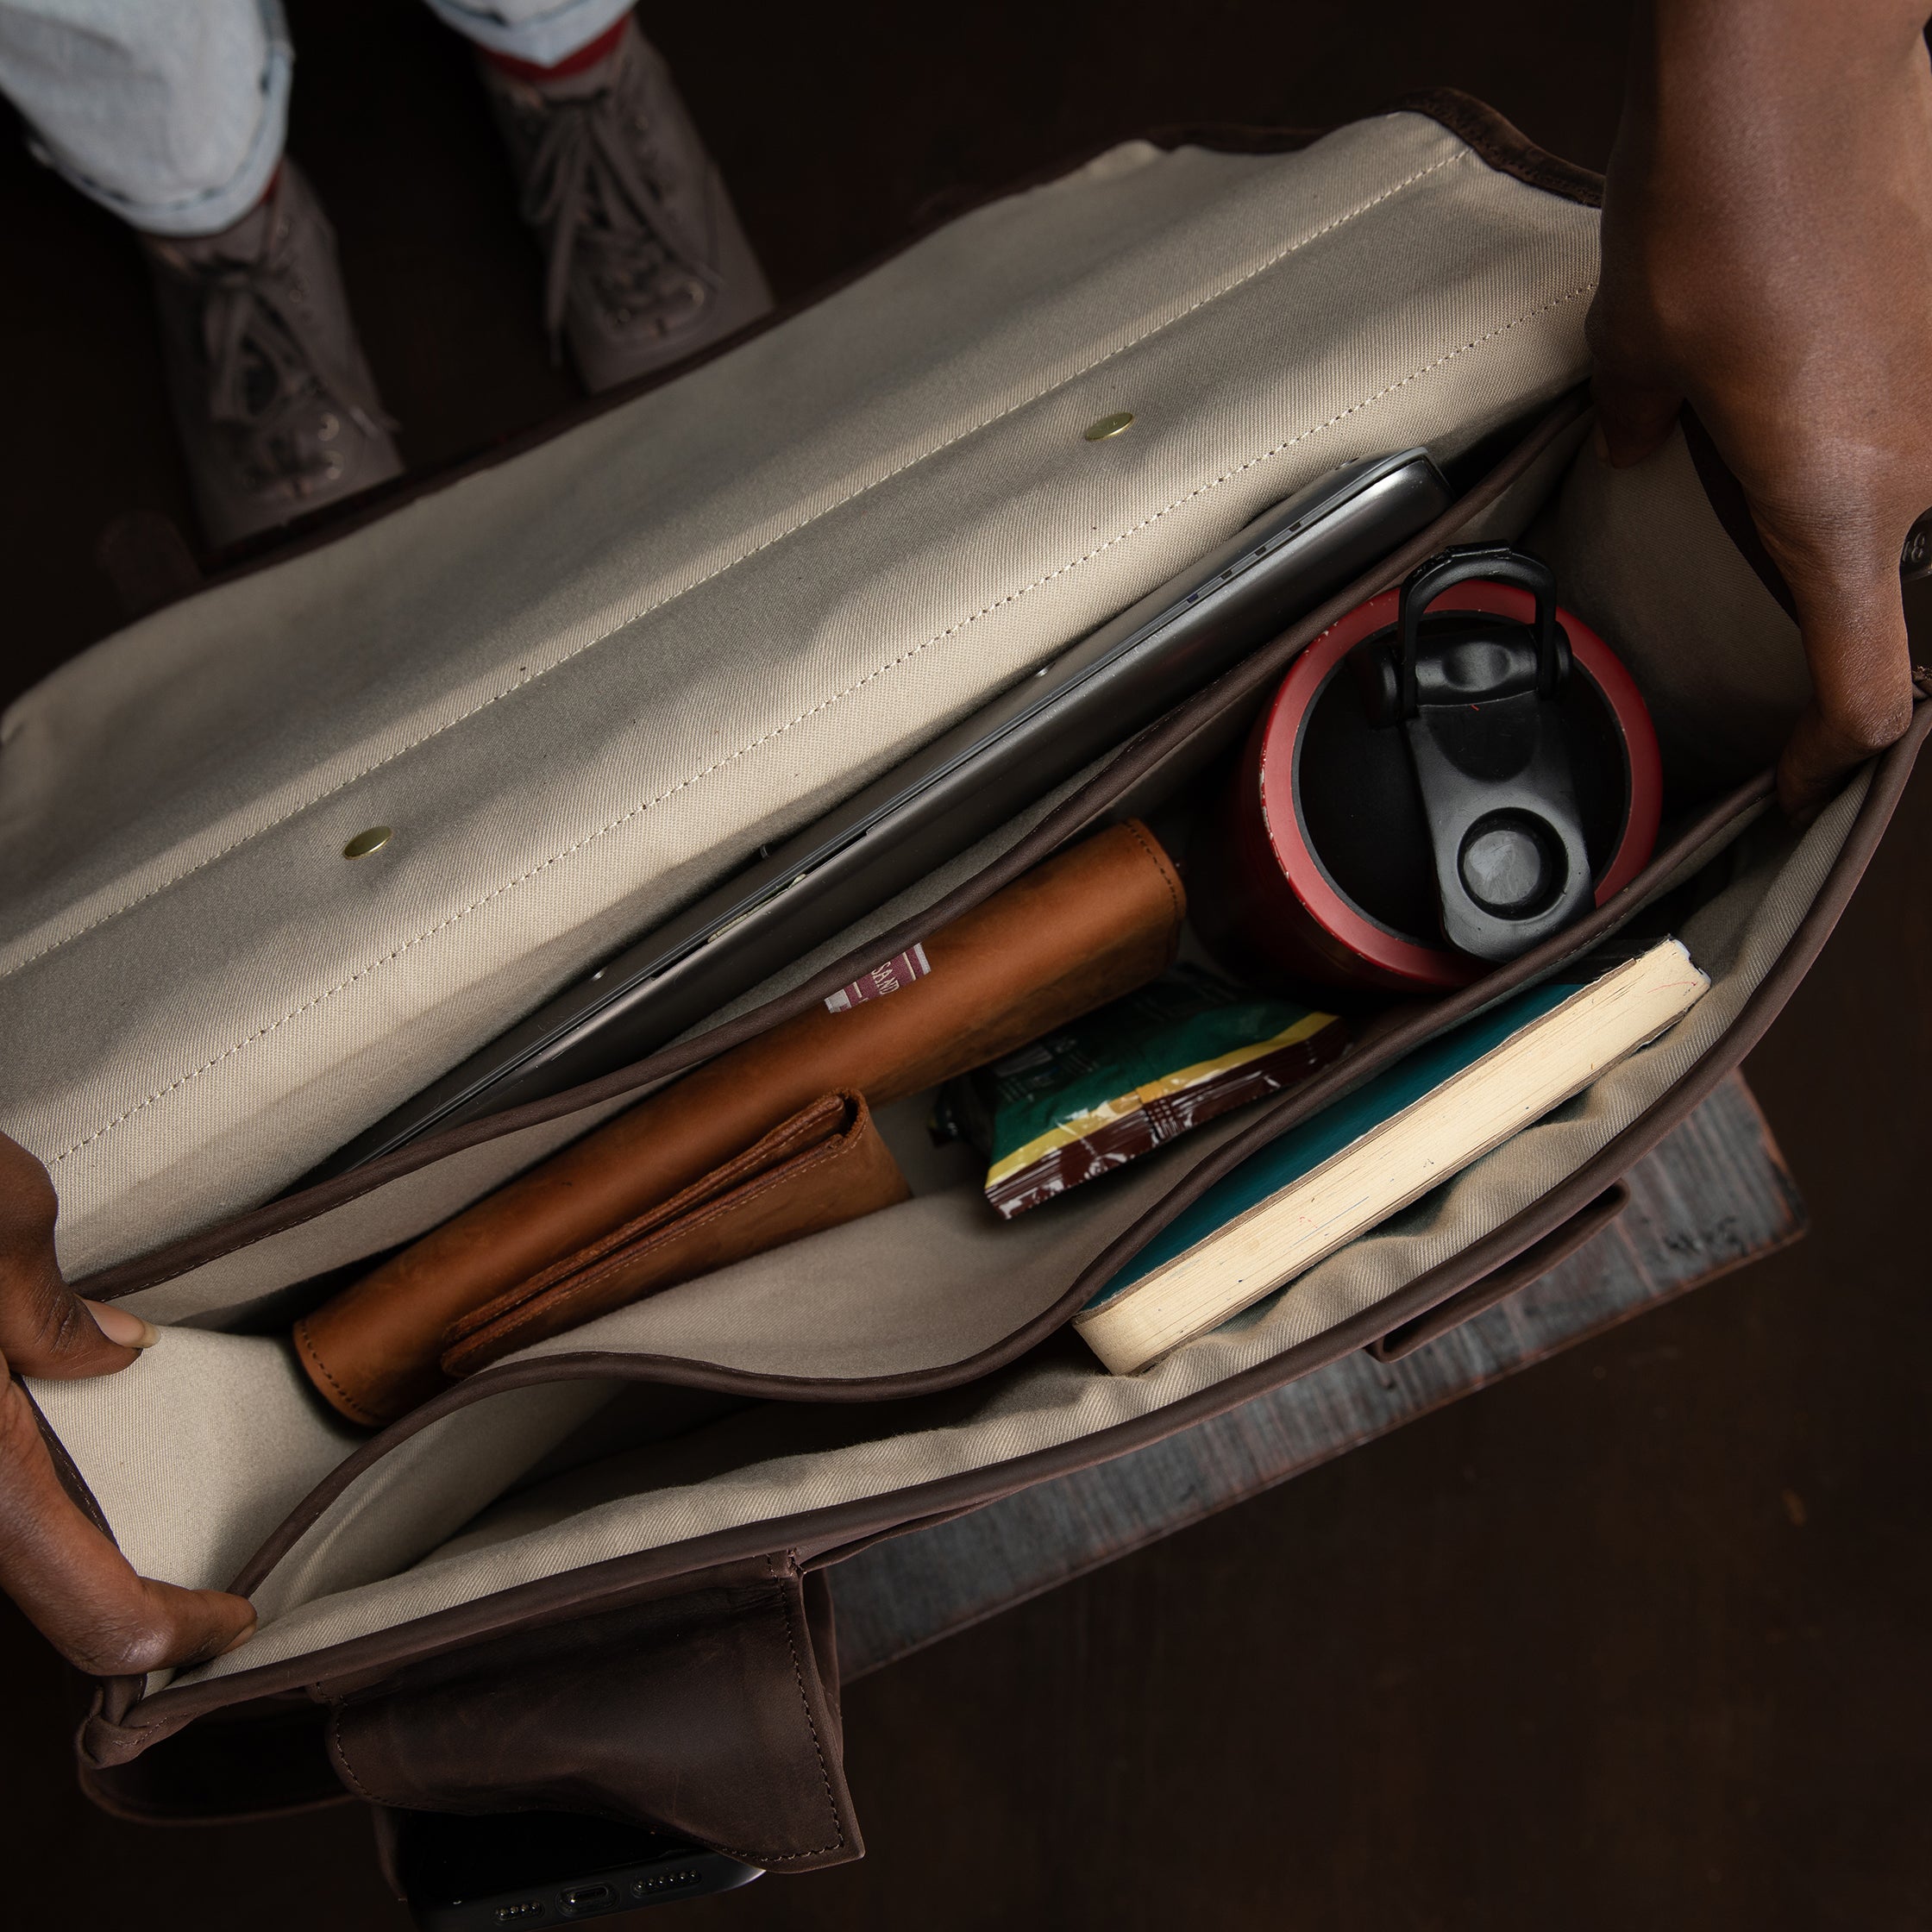 Pull Up Leather Executive Briefcase - Sandstorm Kenya (KE)